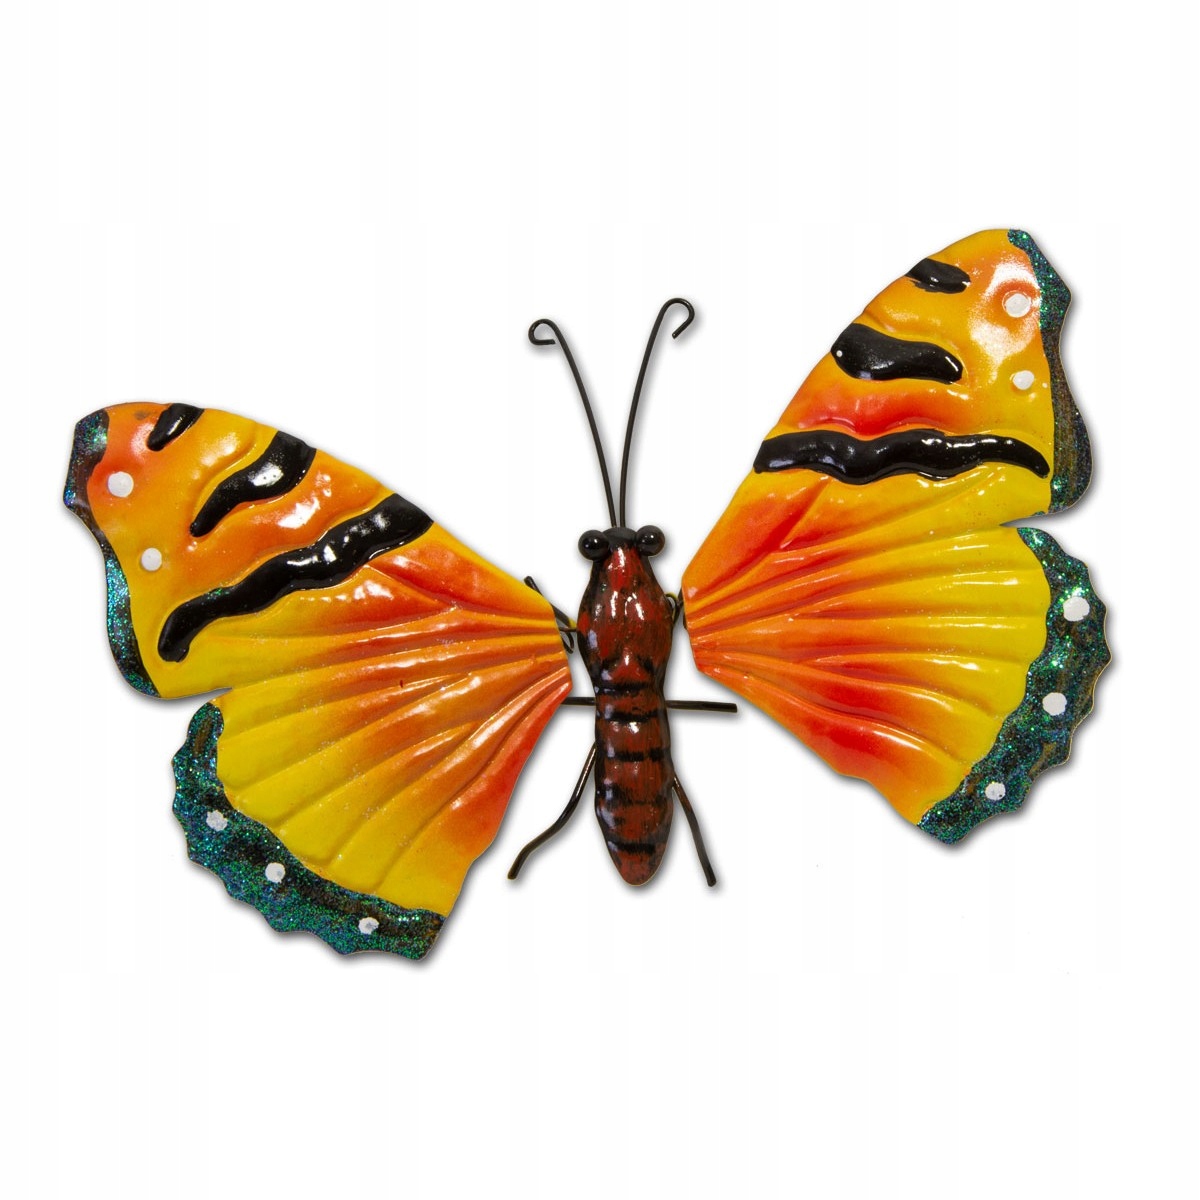 Купить бабочки с доставкой. Металлические декоративные бабочки. Бабочка металлическая в сад. Бабочки декоративные фигурки. Бабочка железная но она Радужная.